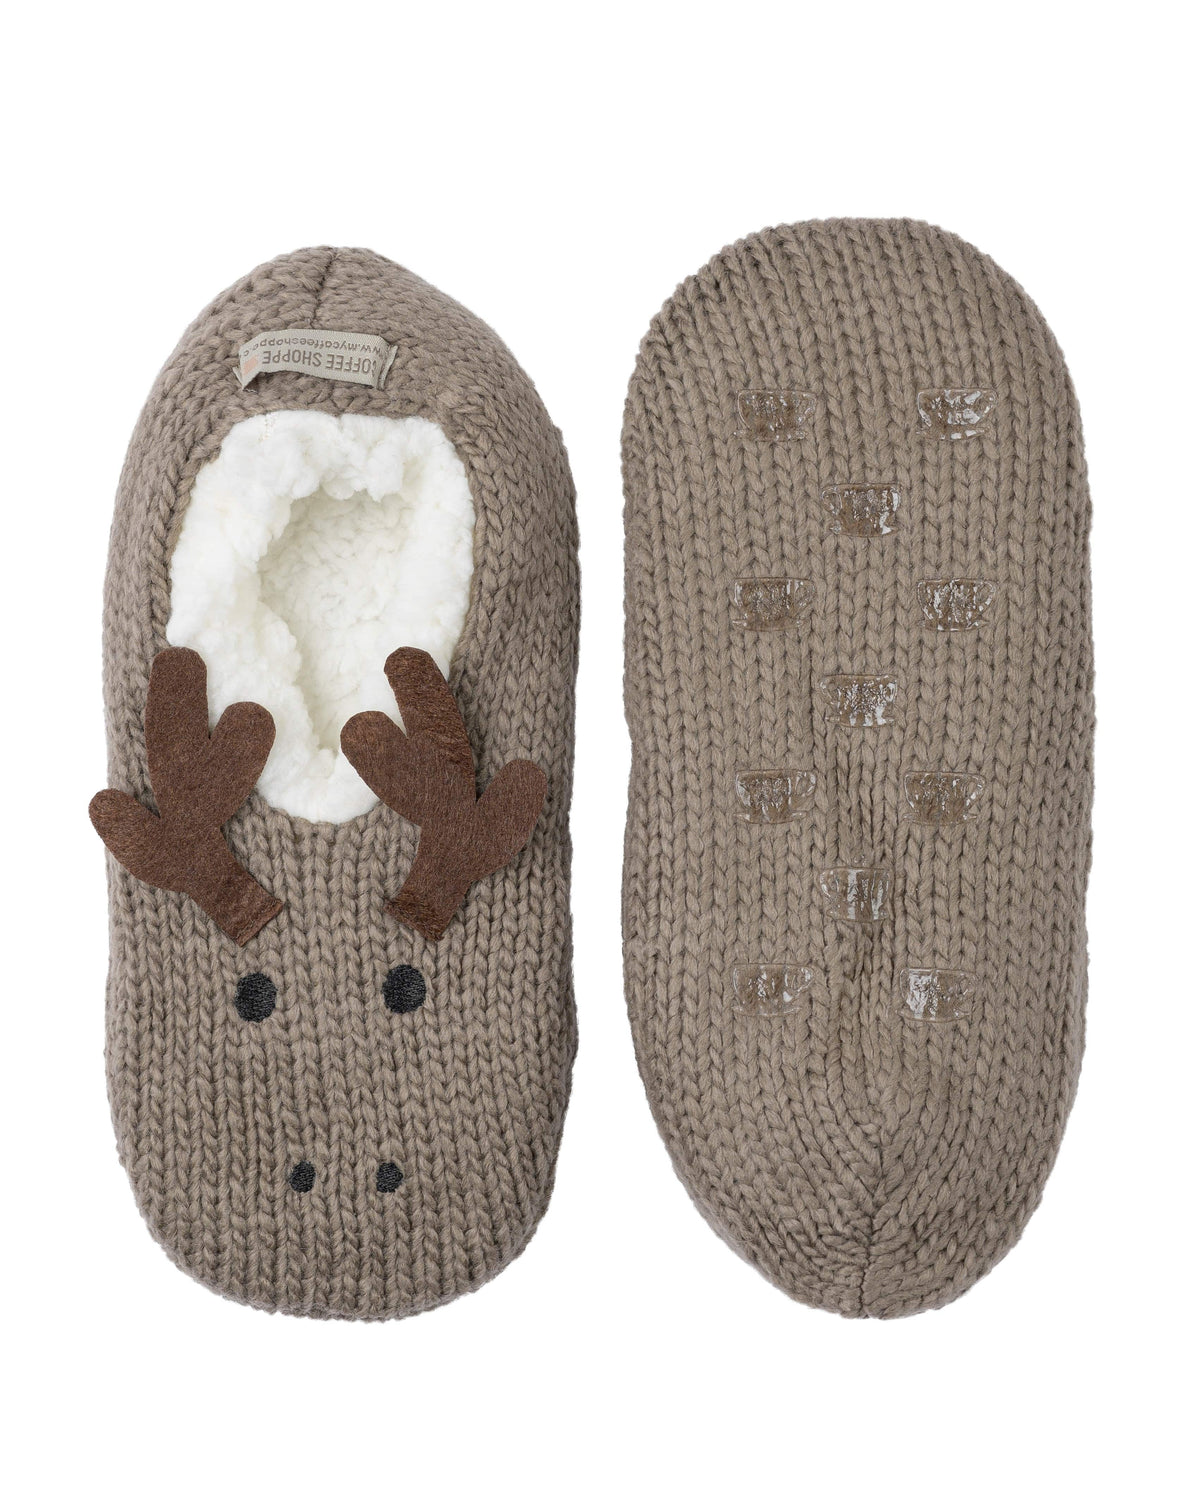 Critter Ankle Slippers - Moose (Fungi) - LATTELOVE Co.